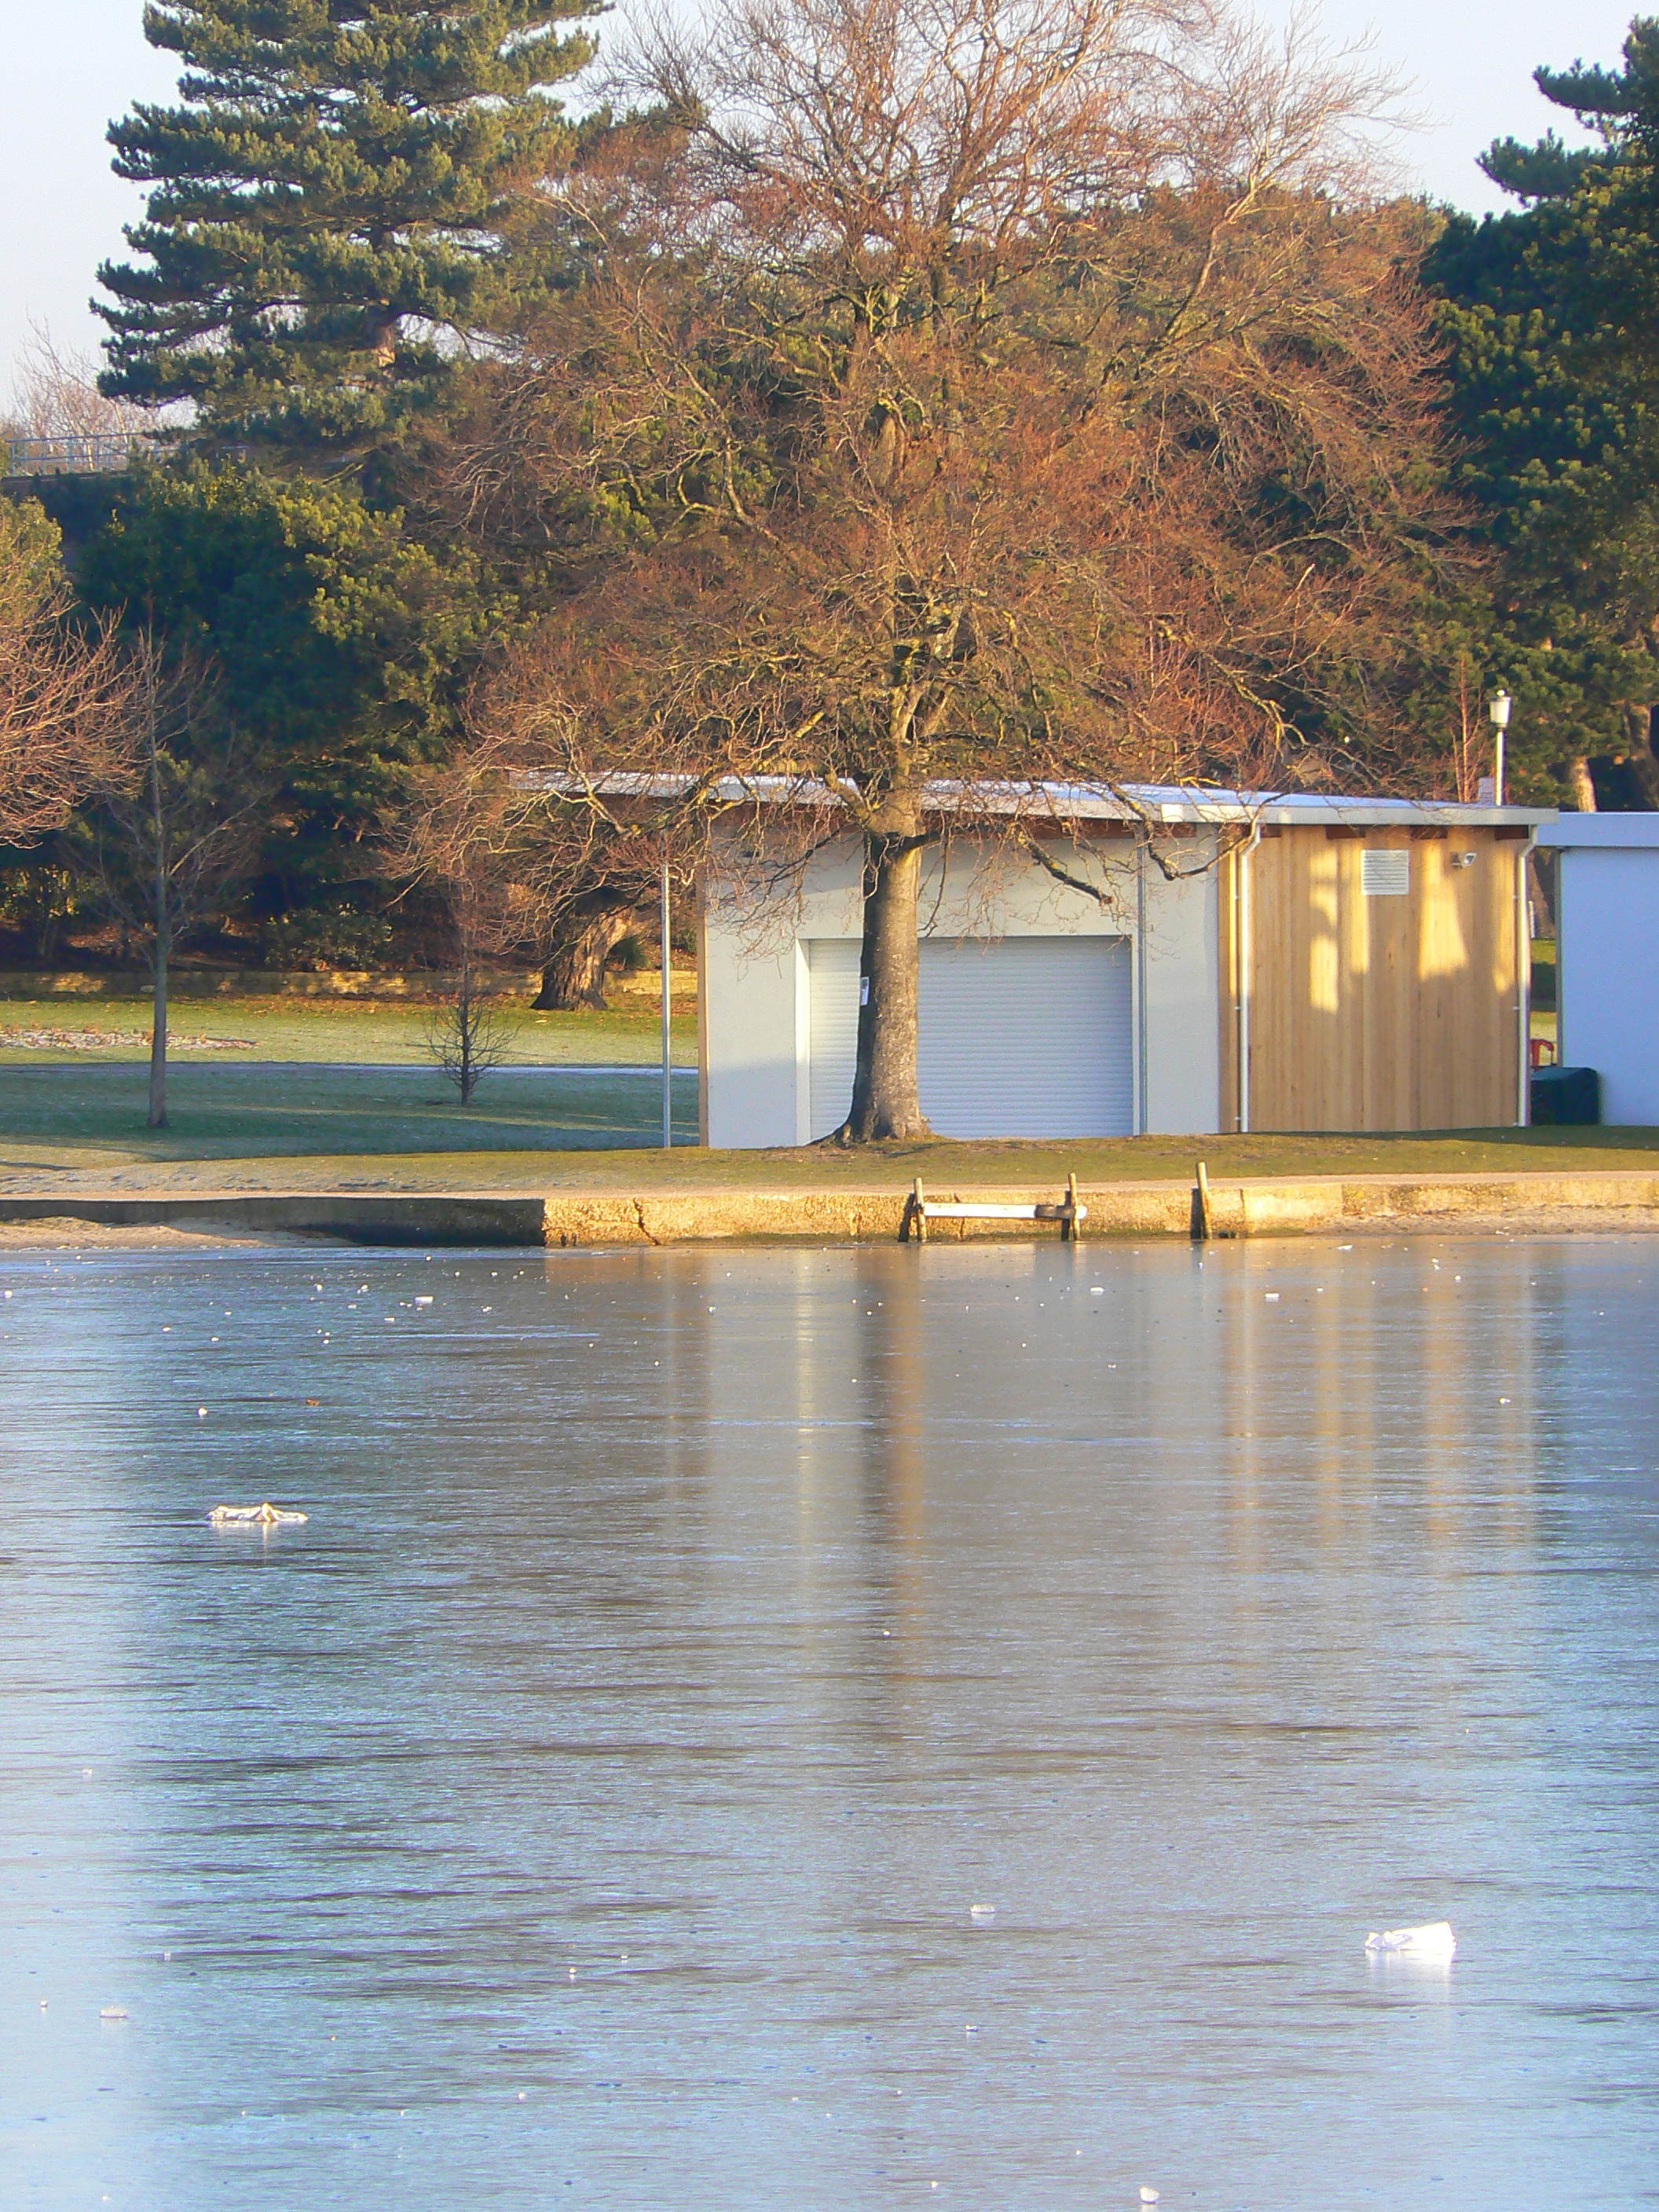 Frozen Lake in Poole Park